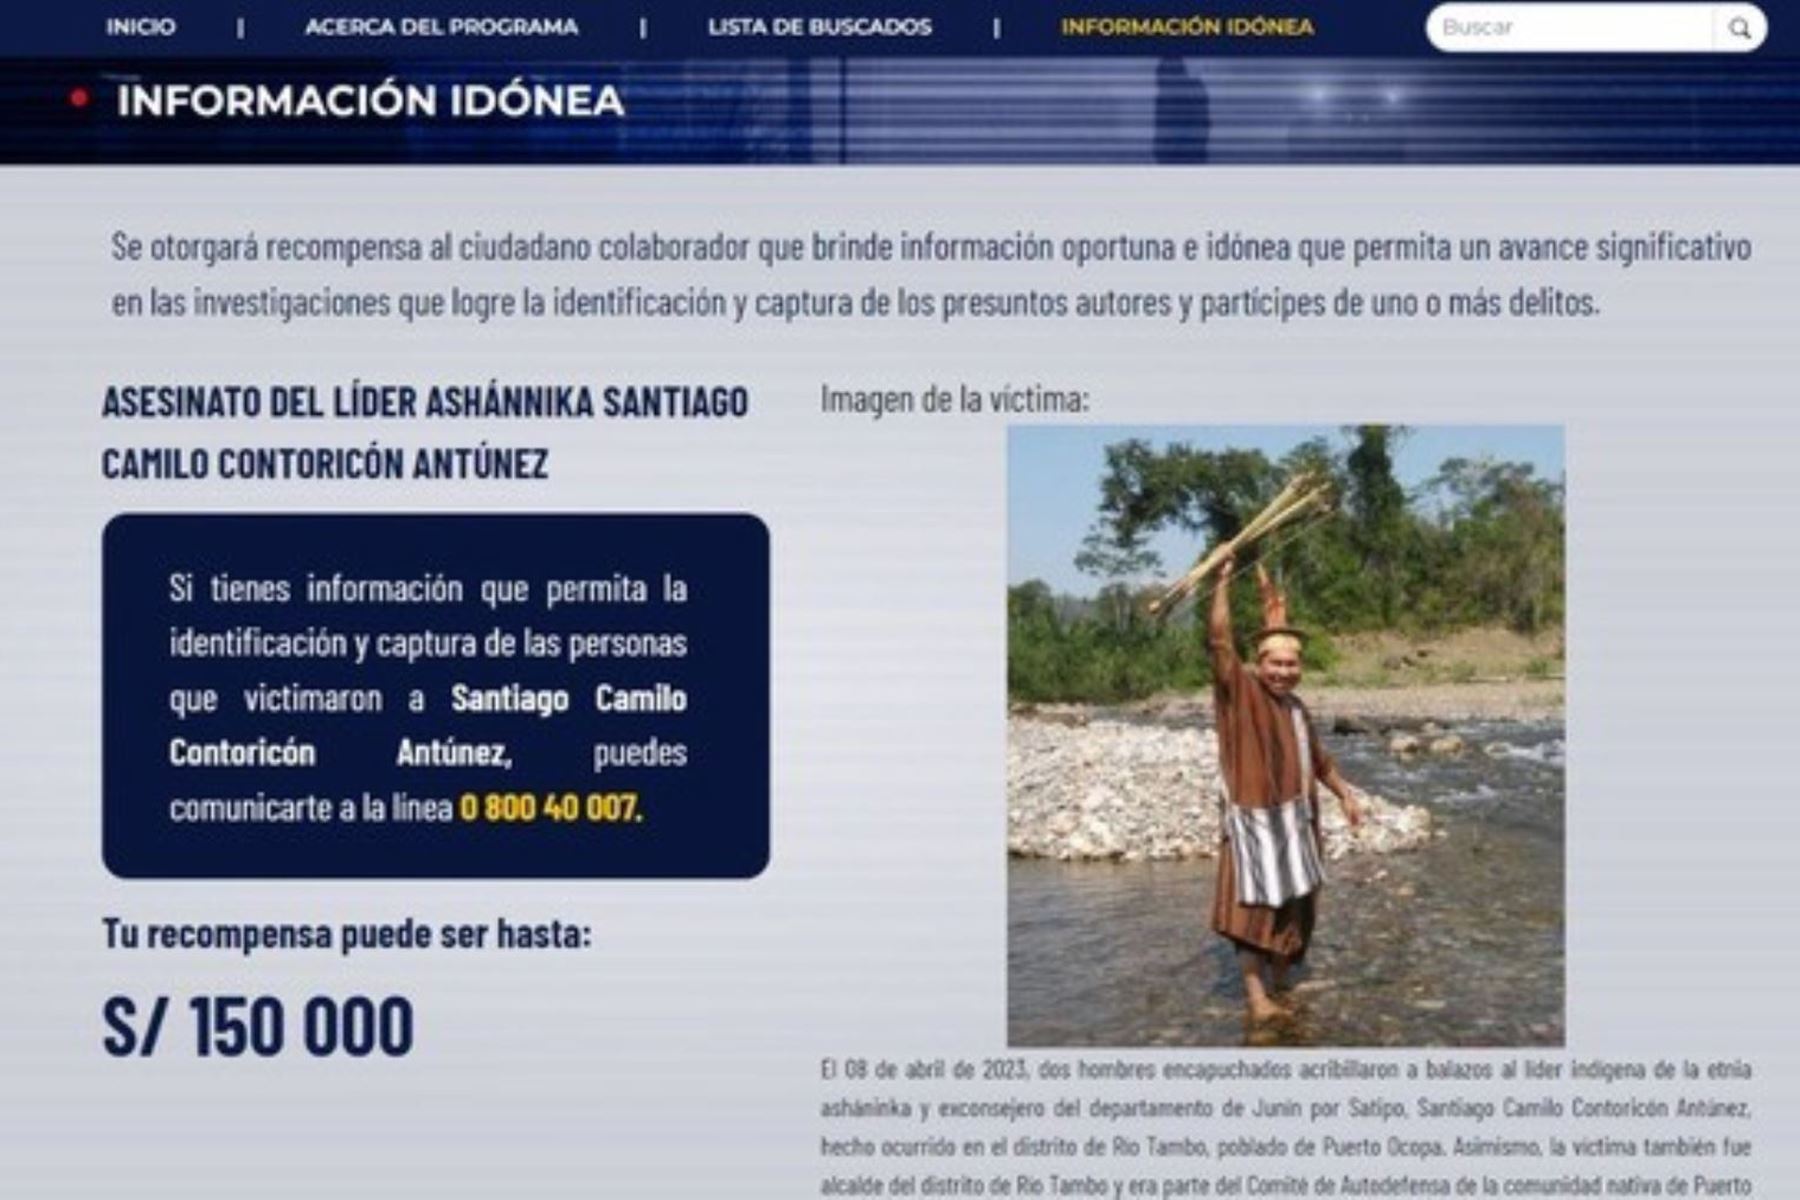 El Programa de Recompensas del Mininter ofrece hasta S/ 150 000 por información que facilite la identificación, detención y captura de los responsables del asesinato del líder asháninka Santiago Camilo Contoricón Antúnez.